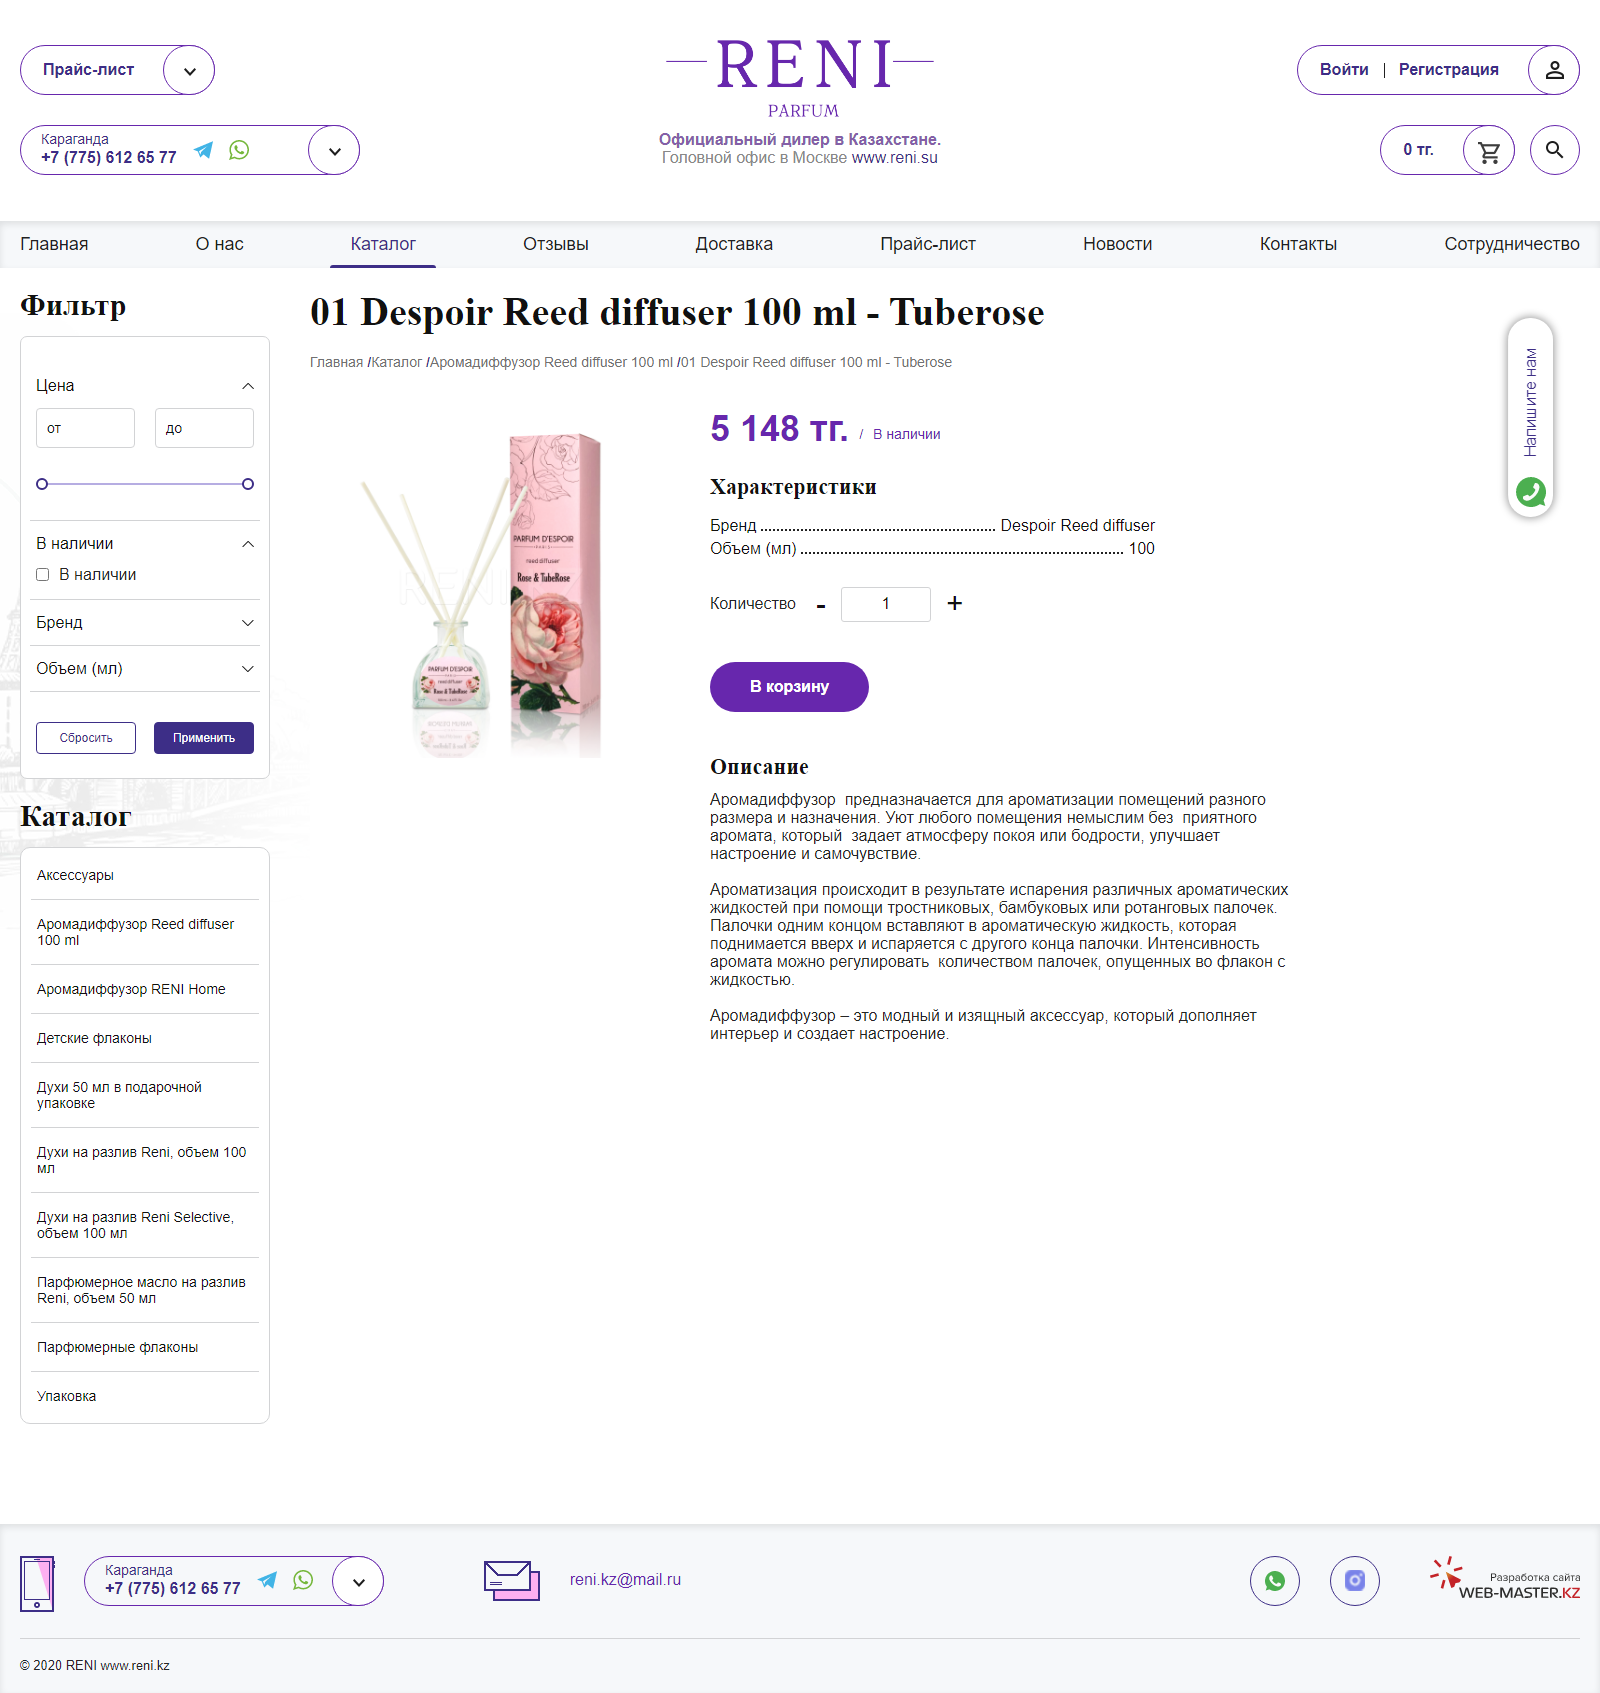 интернет-магазин наливной парфюмерии reni